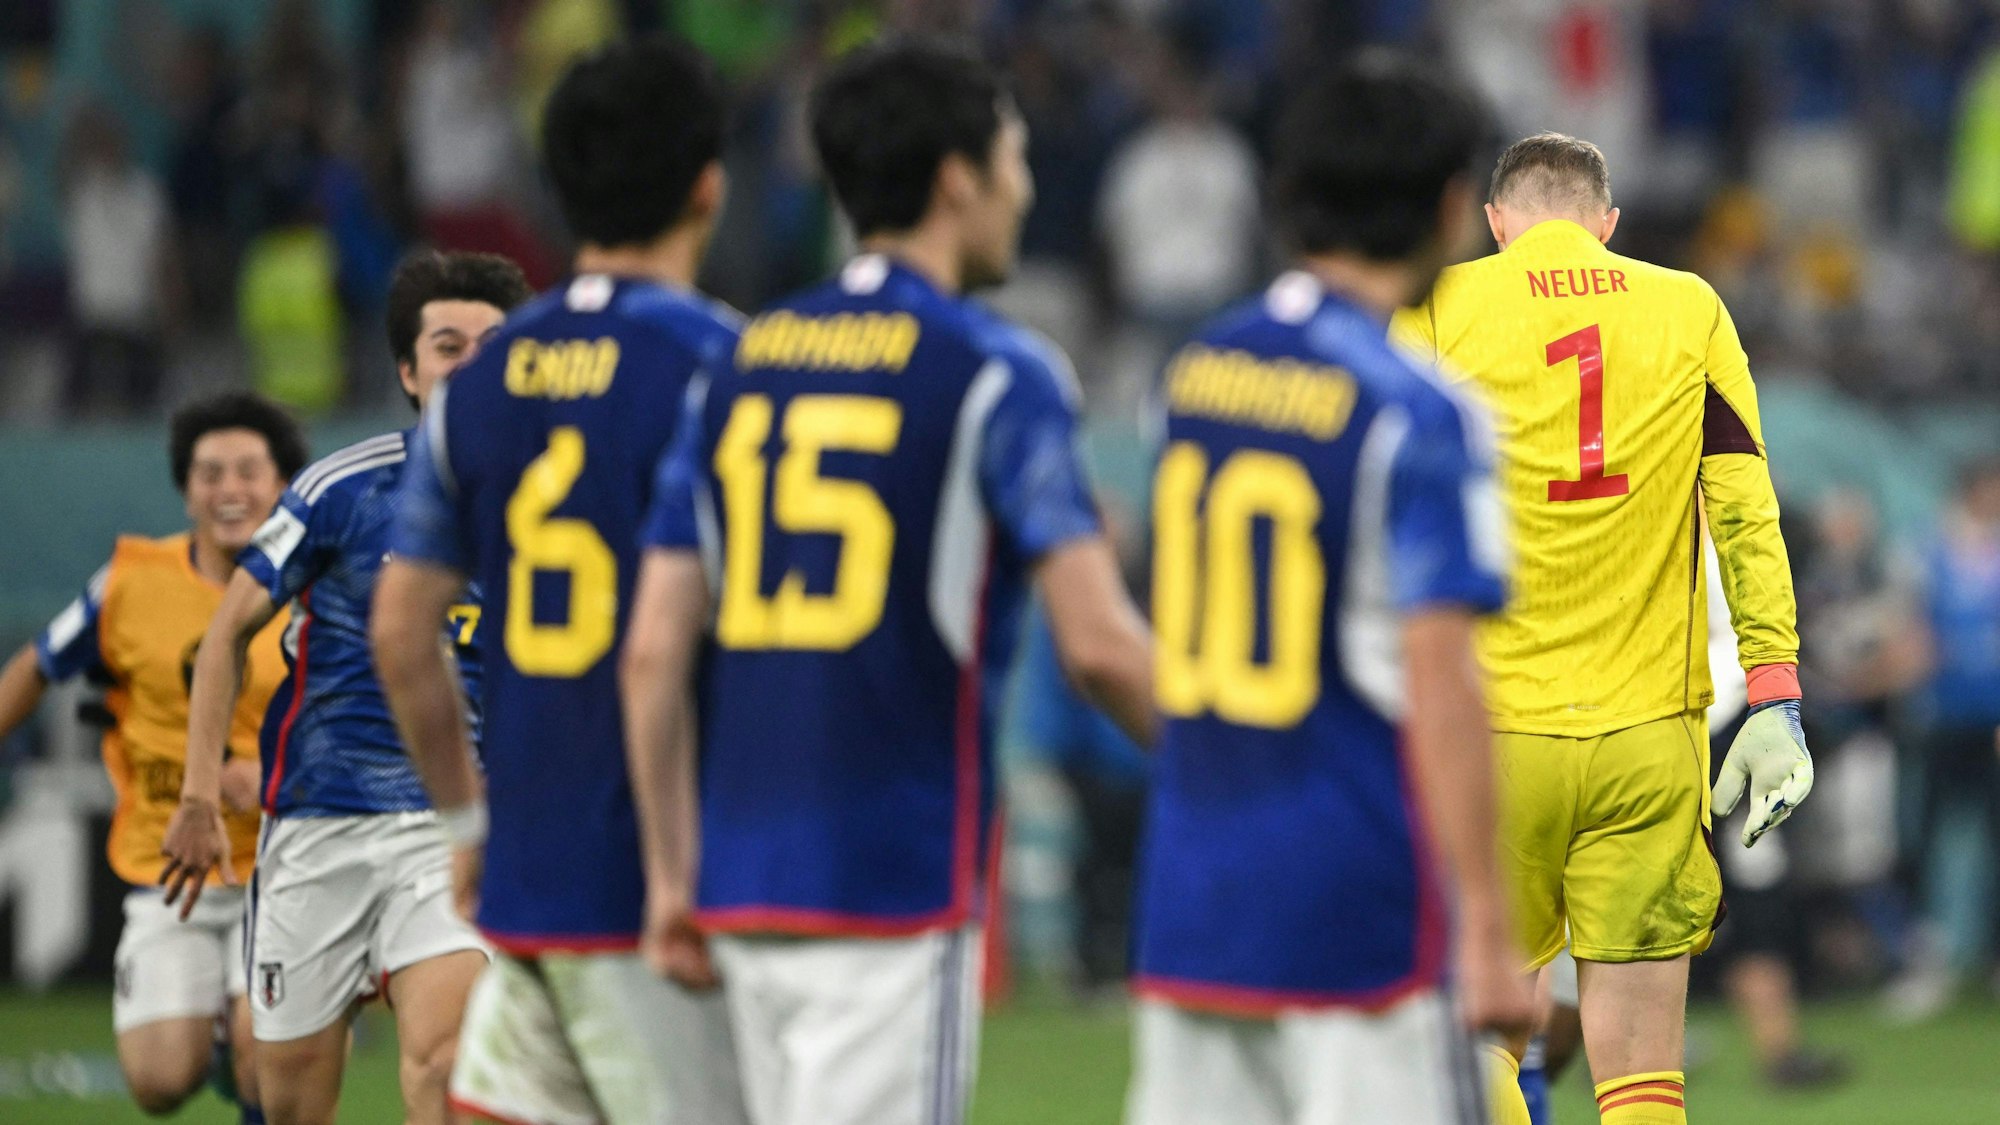 Manuel Neuer verlässt mit gesenktem Haupt das Spielfeld, während um ihn herum die japanische Nationalmannschaft jubelt.